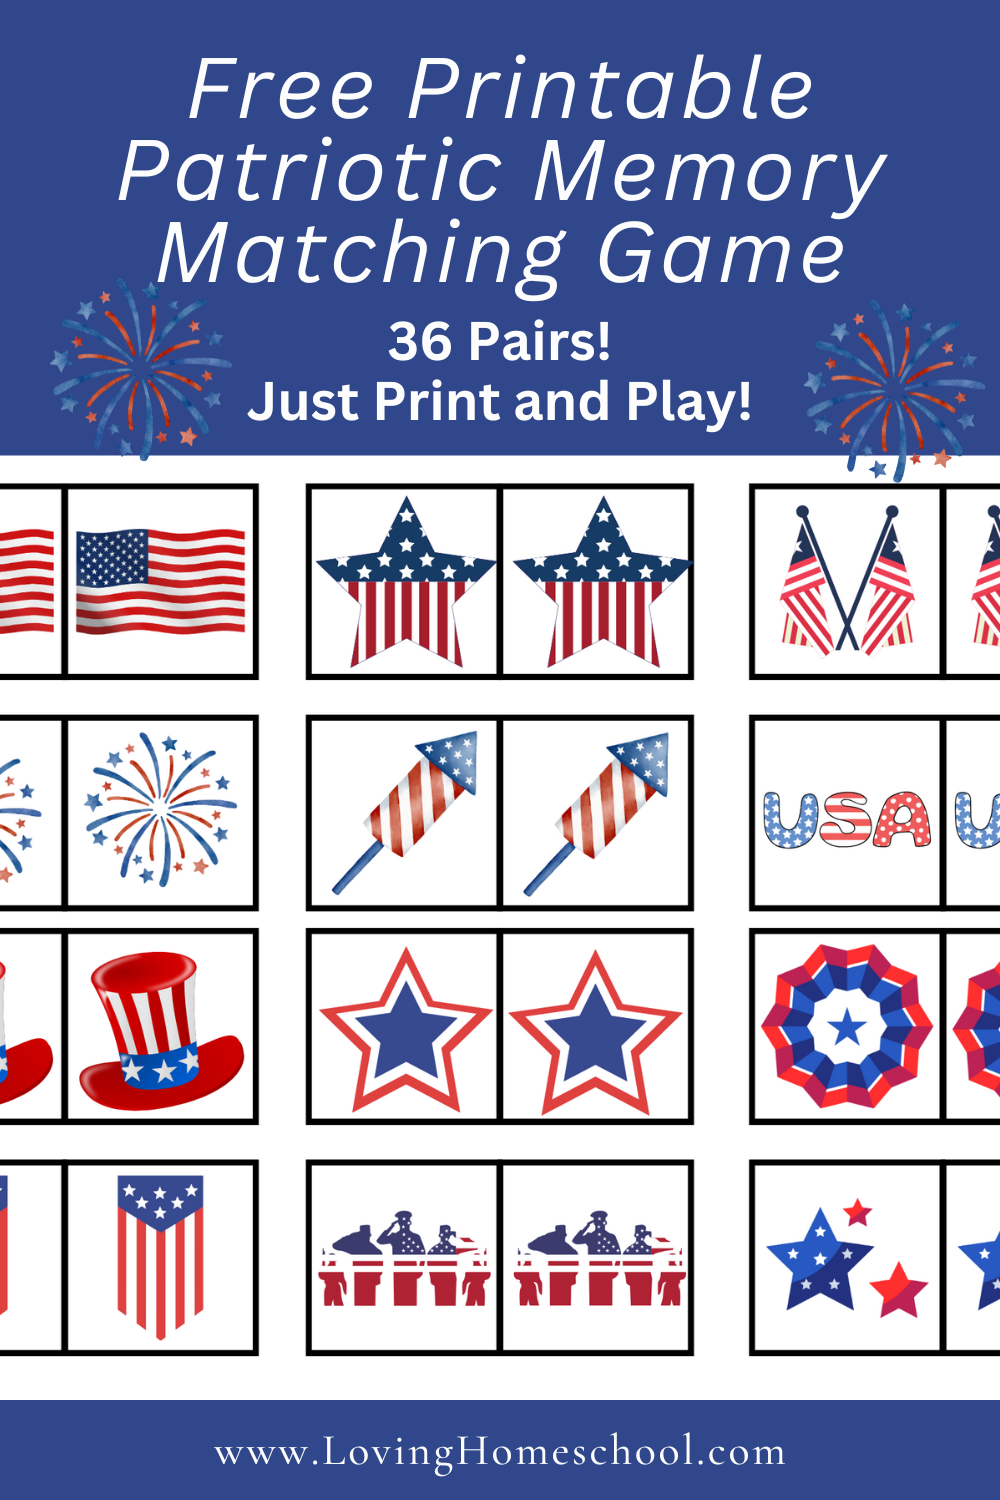 Free Printable Patriotic Memory Matching Game Pinterest Pin